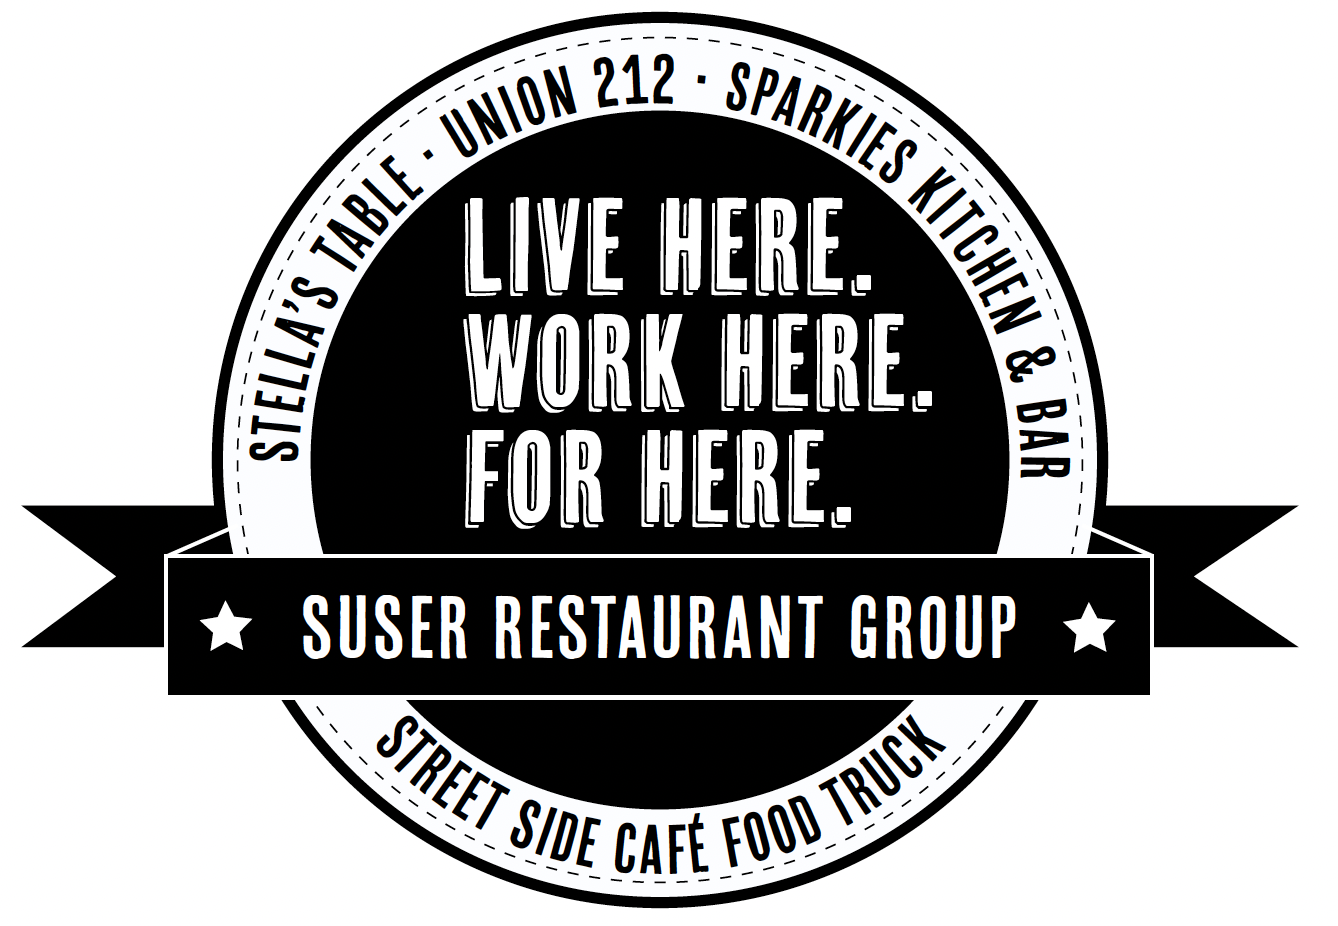 Suser Restaurant Group